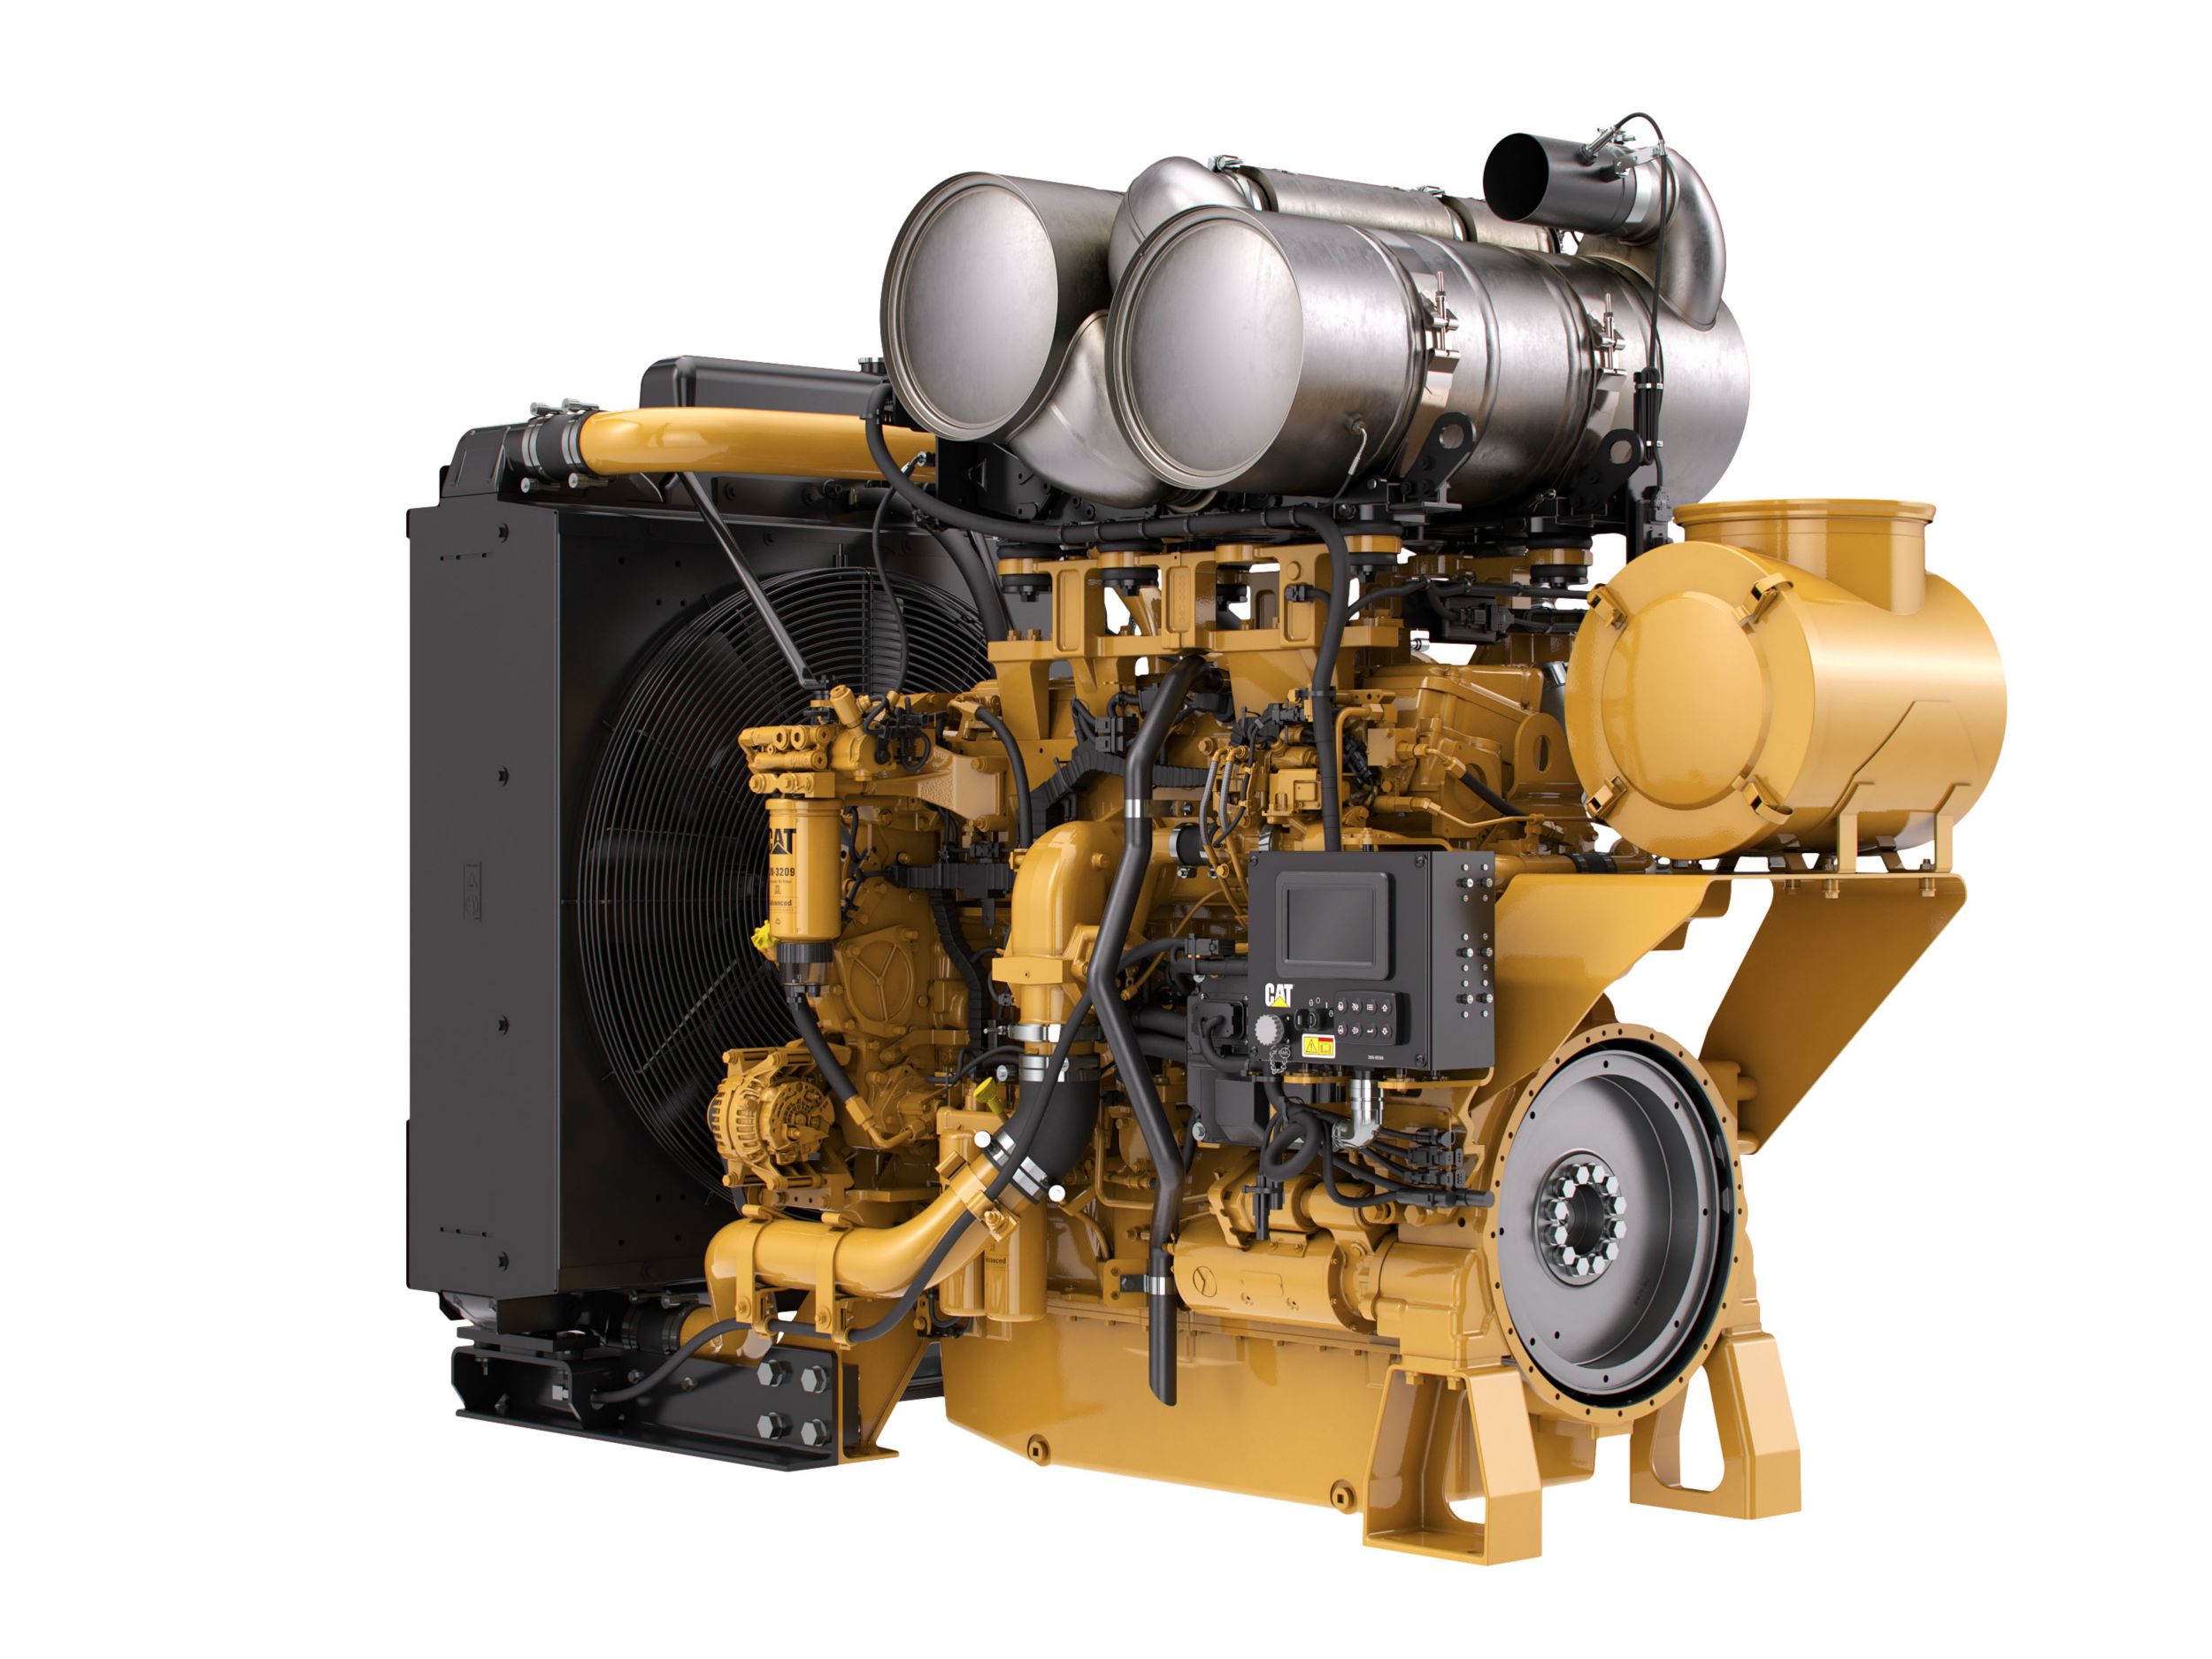 Unidade de Energia Industrial Tier 4 C18 ACERT™ Unidades de Energia Diesel - Altamente regulamentado